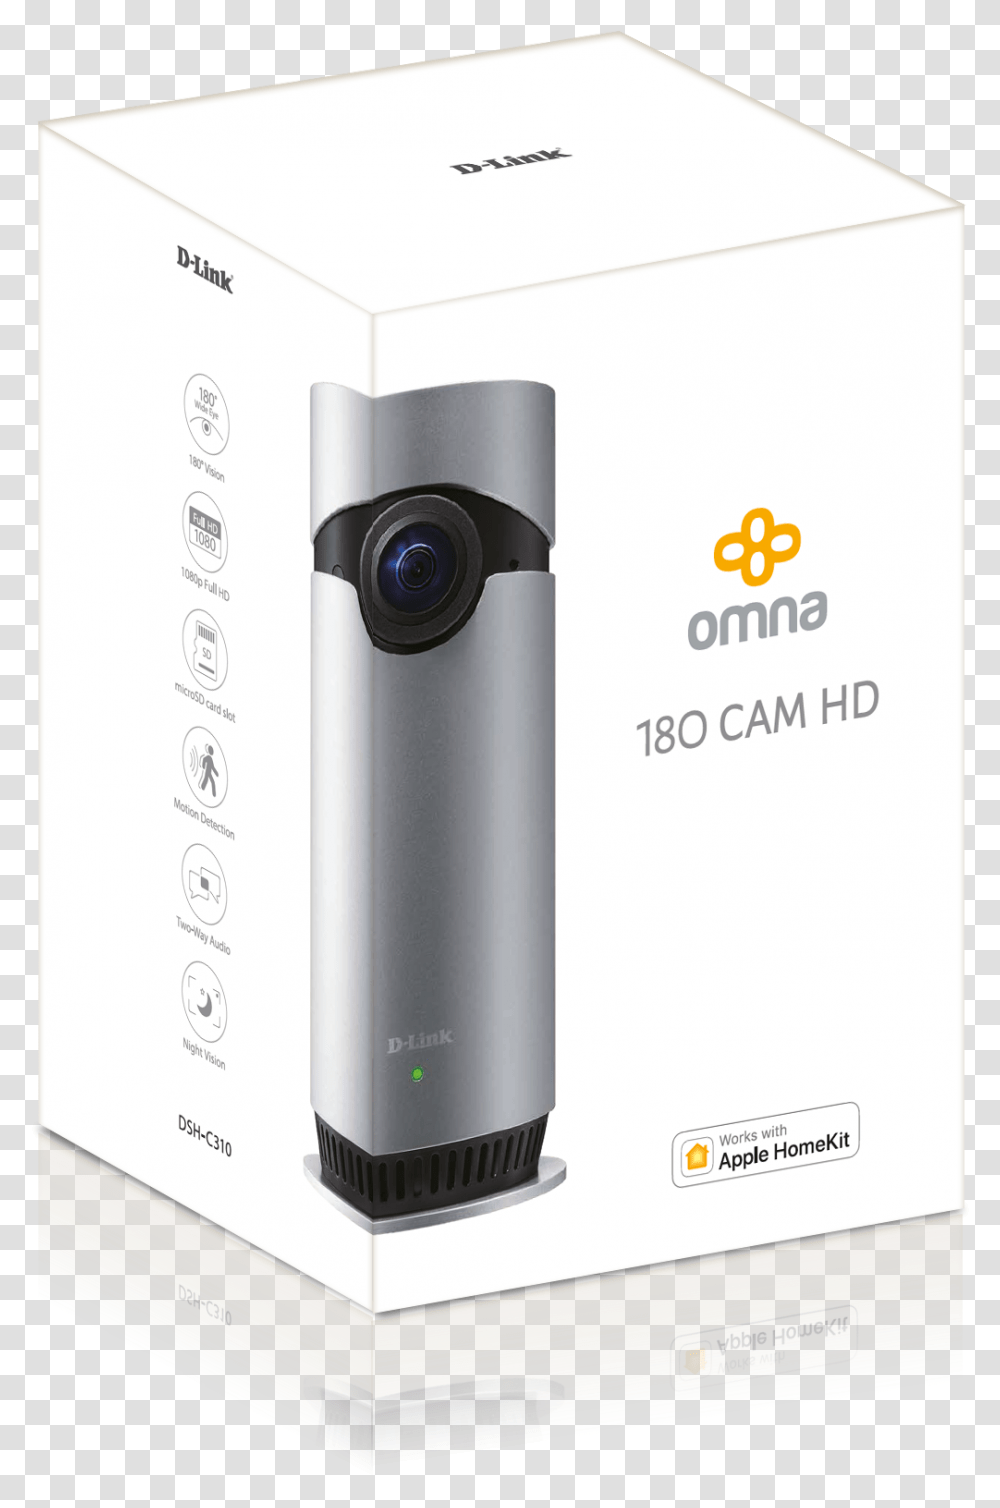 Dsh C310 Omna 180 Cam Hd Dlink Uk Dlink Omna, Electronics, Camera, Webcam, Modem Transparent Png